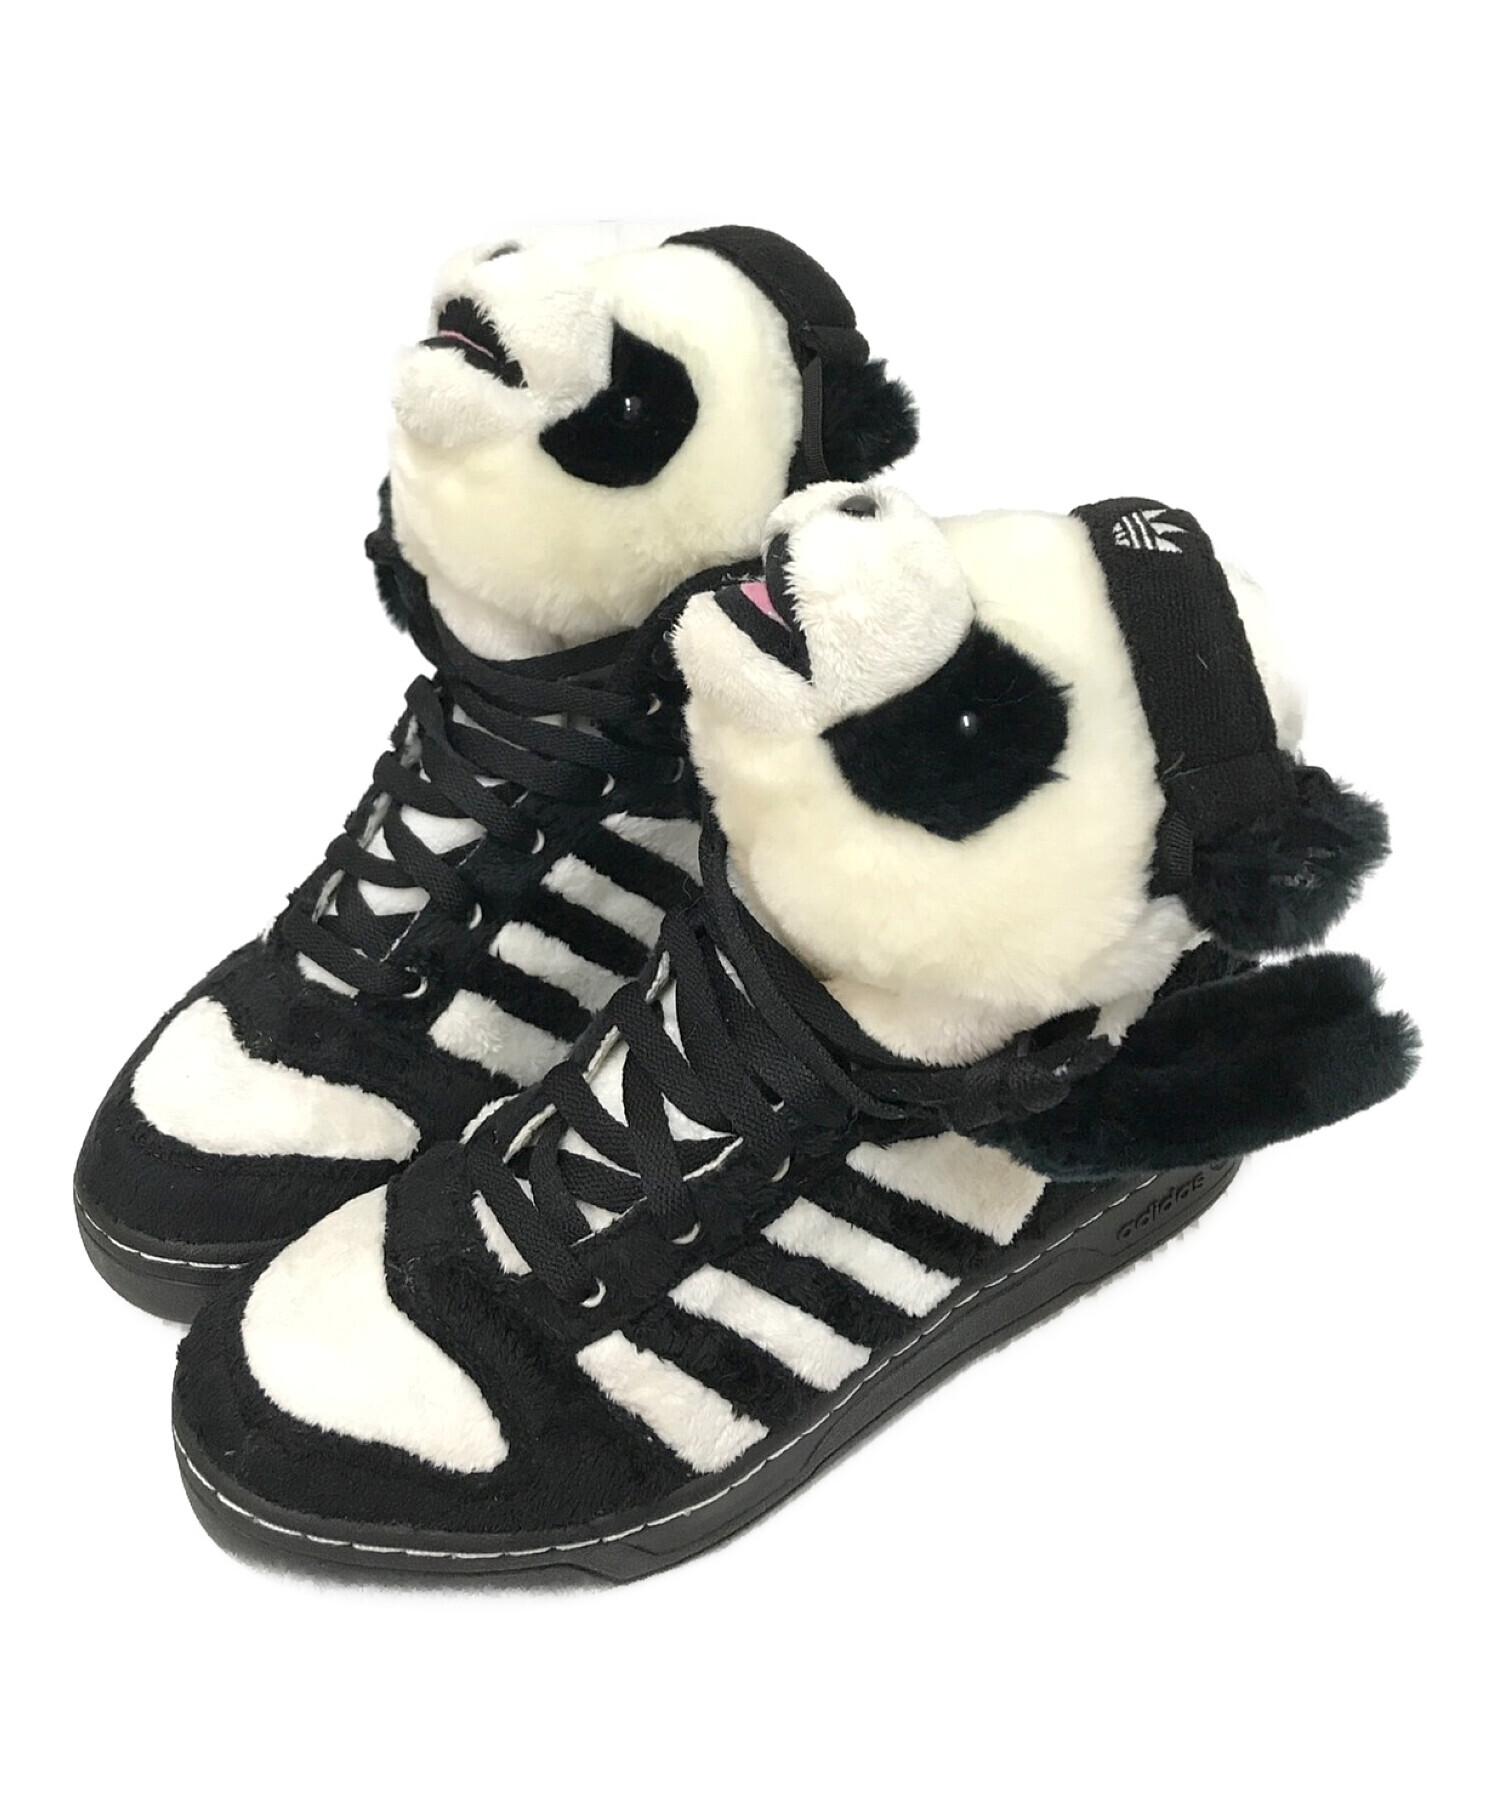 adidas (アディダス) JEREMY SCOTT (ジェレミースコット) JS PANDA BEAR ブラック×ホワイト サイズ:27.0㎝